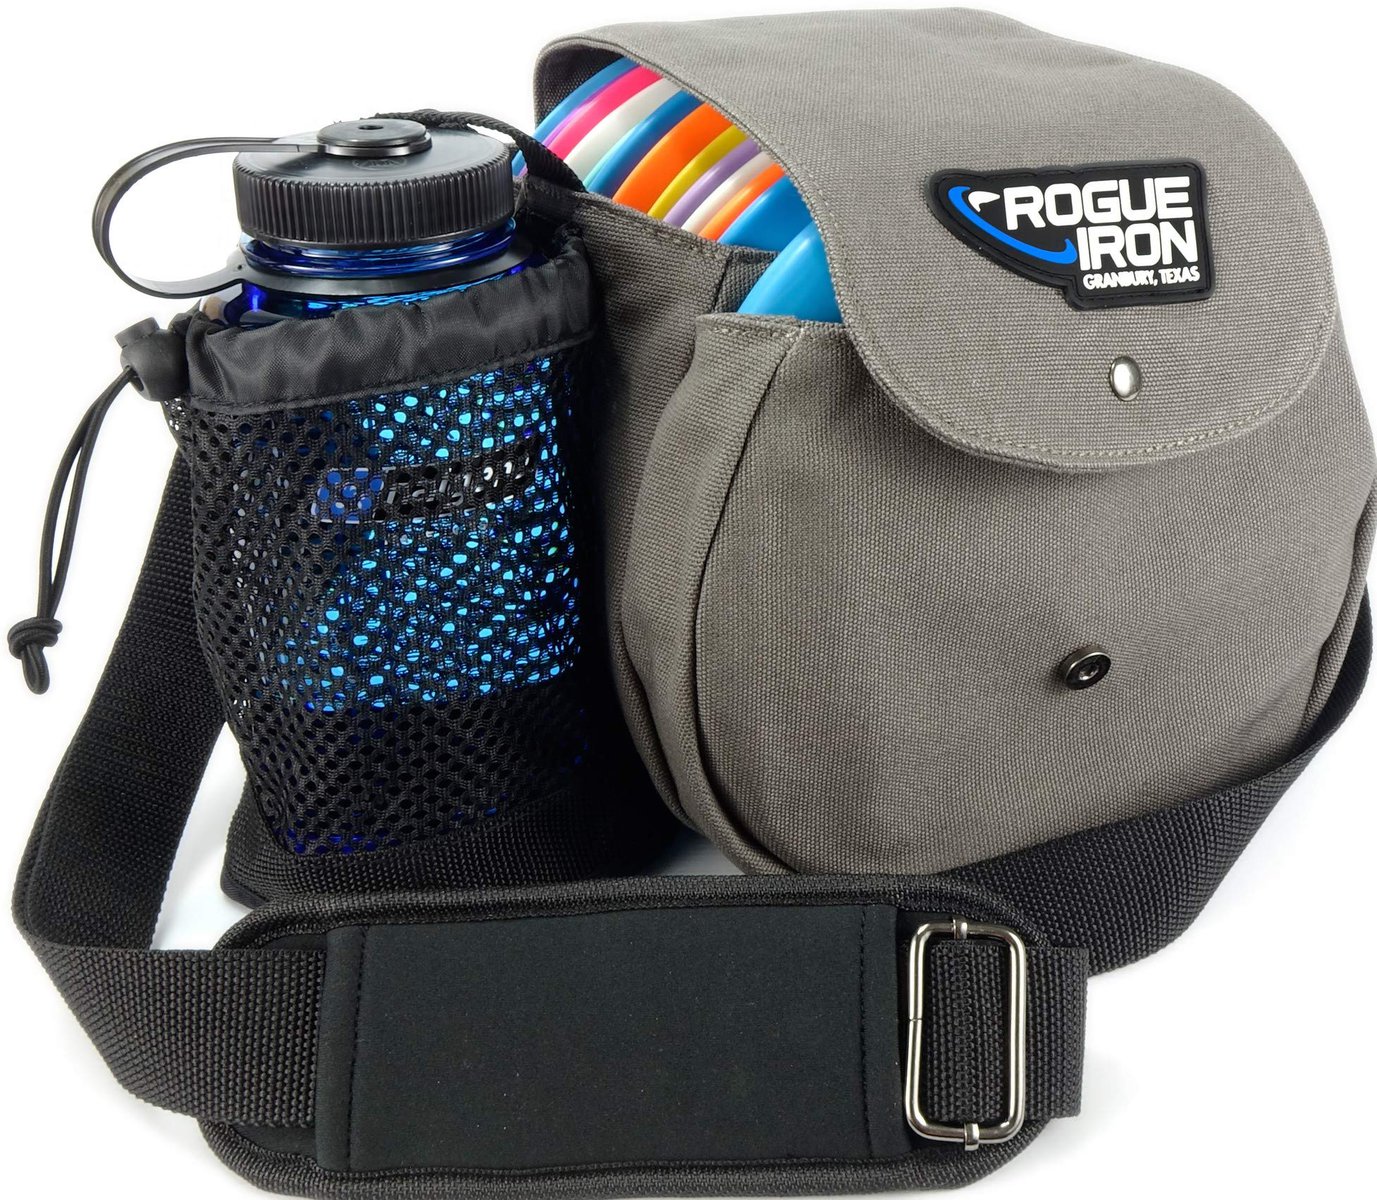 Rogue Iron Disc Golf Satchel Bag, Best Disc Golf Bags